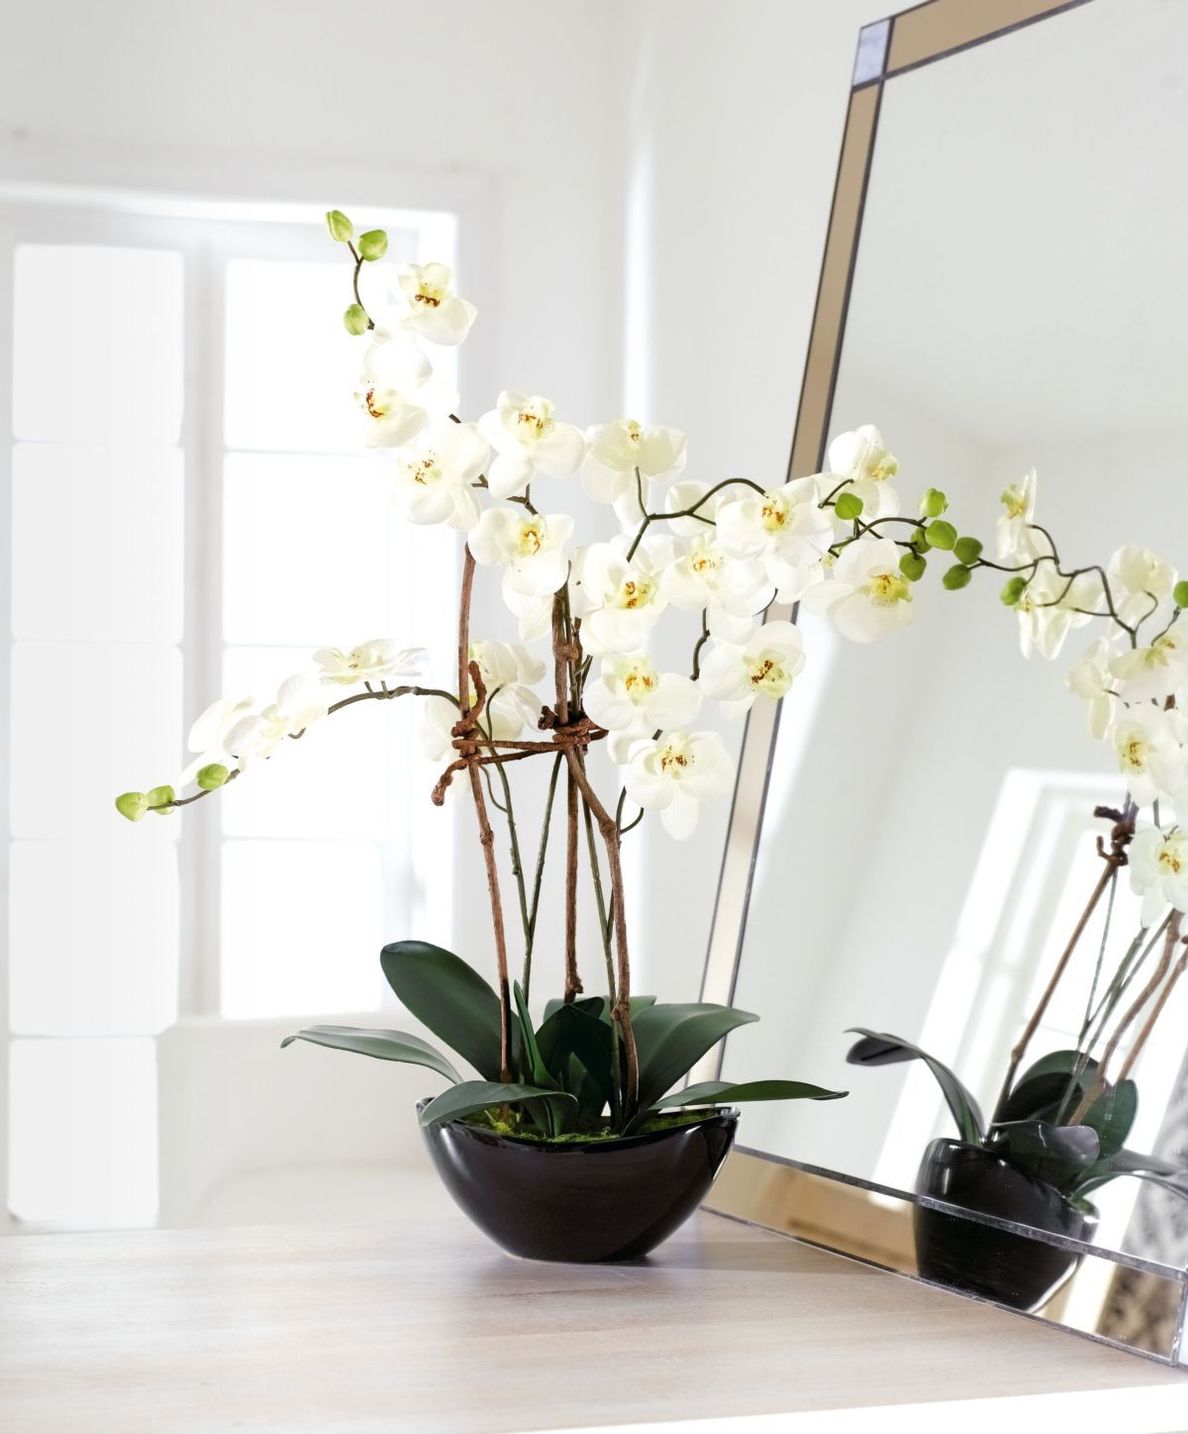 Kunstpflanze Orchideentopf Modern jetzt bei Weltbild.ch bestellen